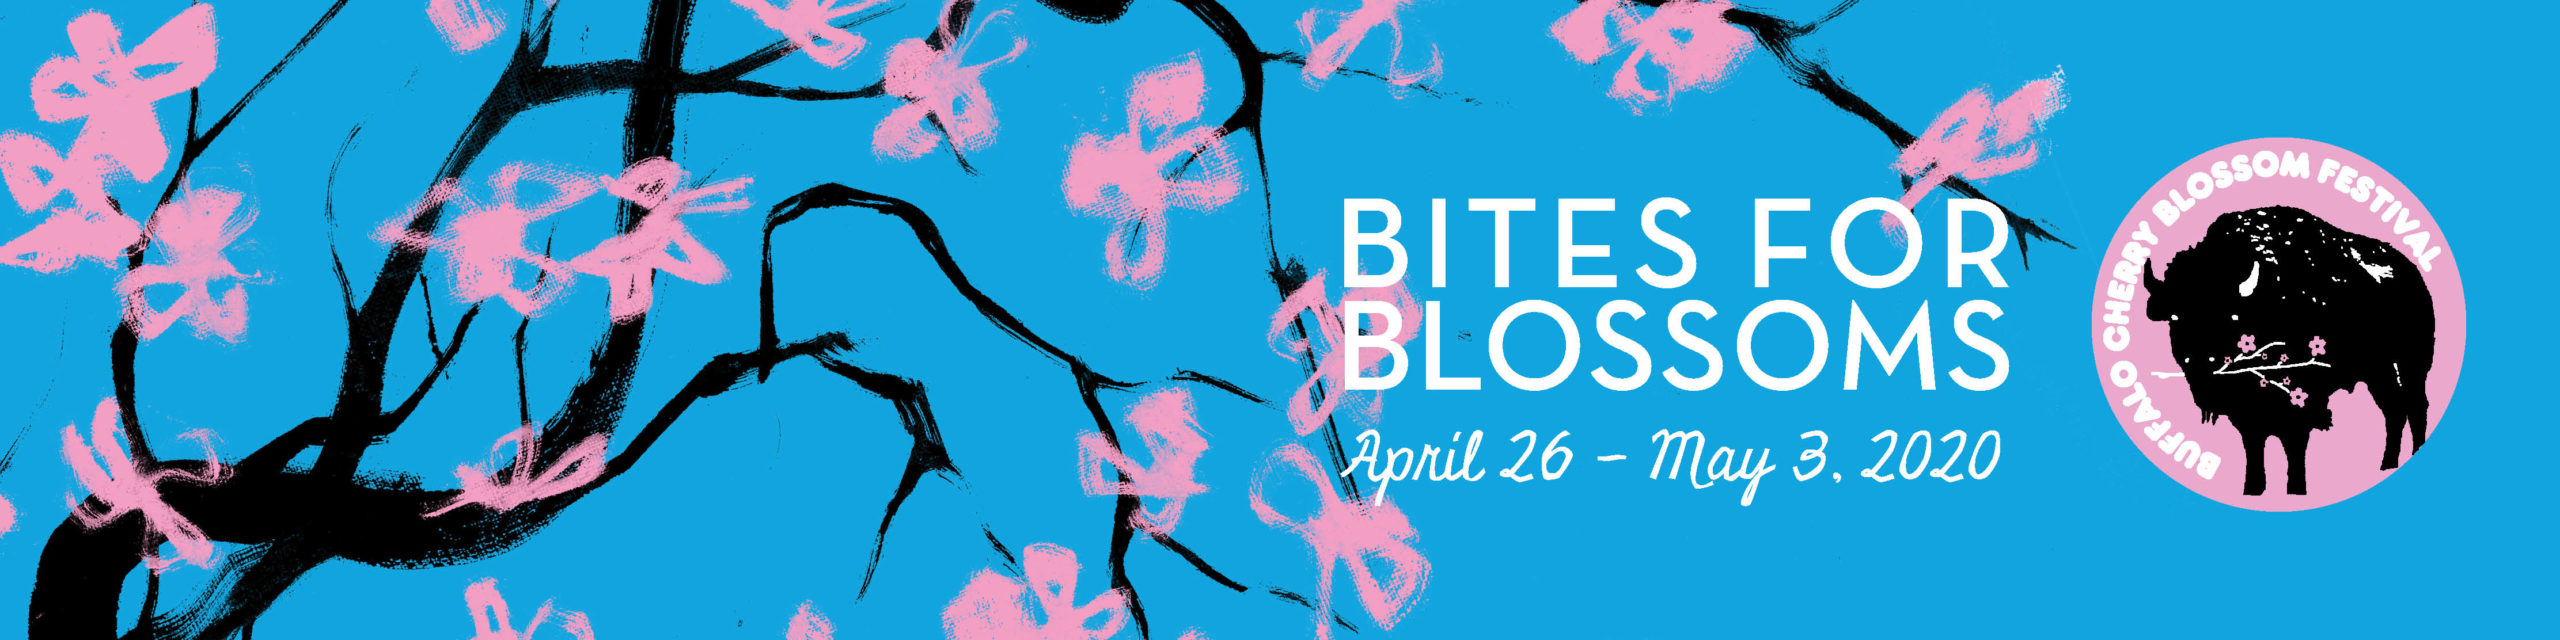 Bites for Blossoms 2020